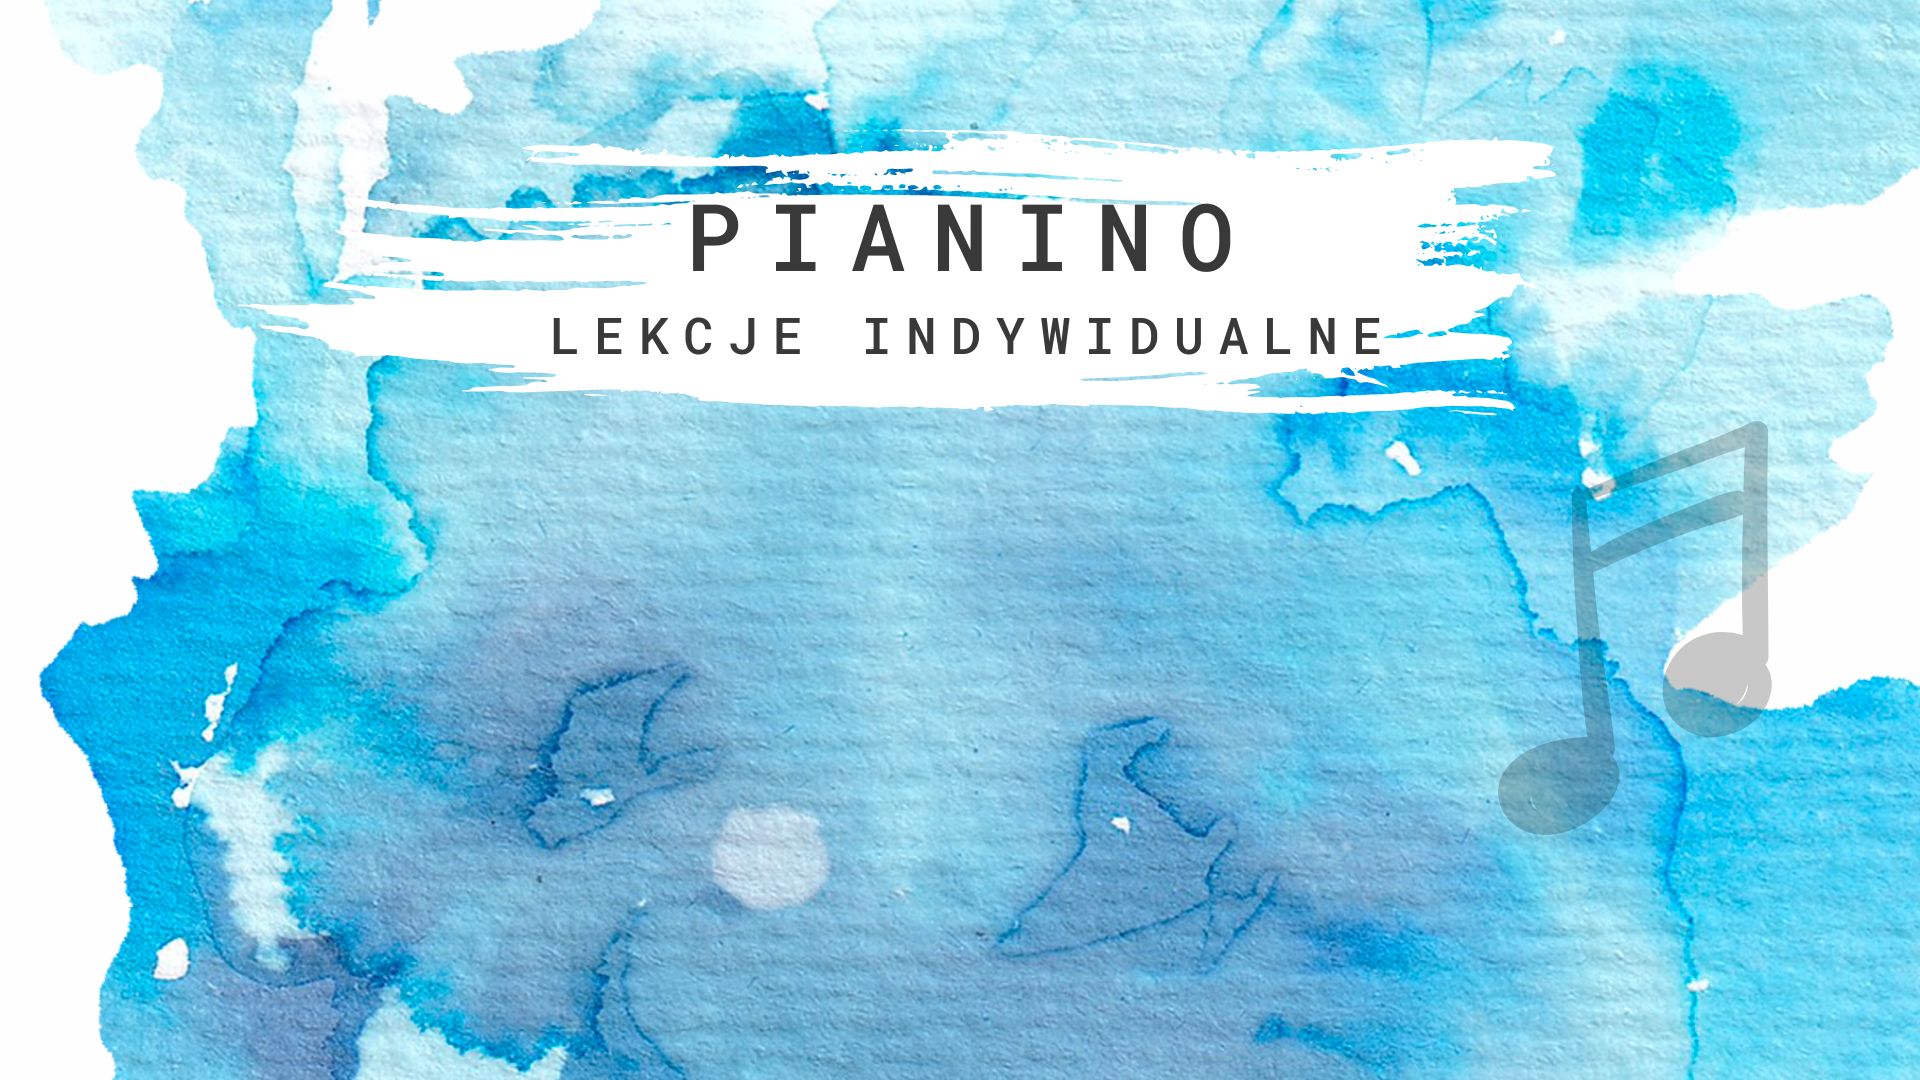 Pianino - lekcje indywidualne